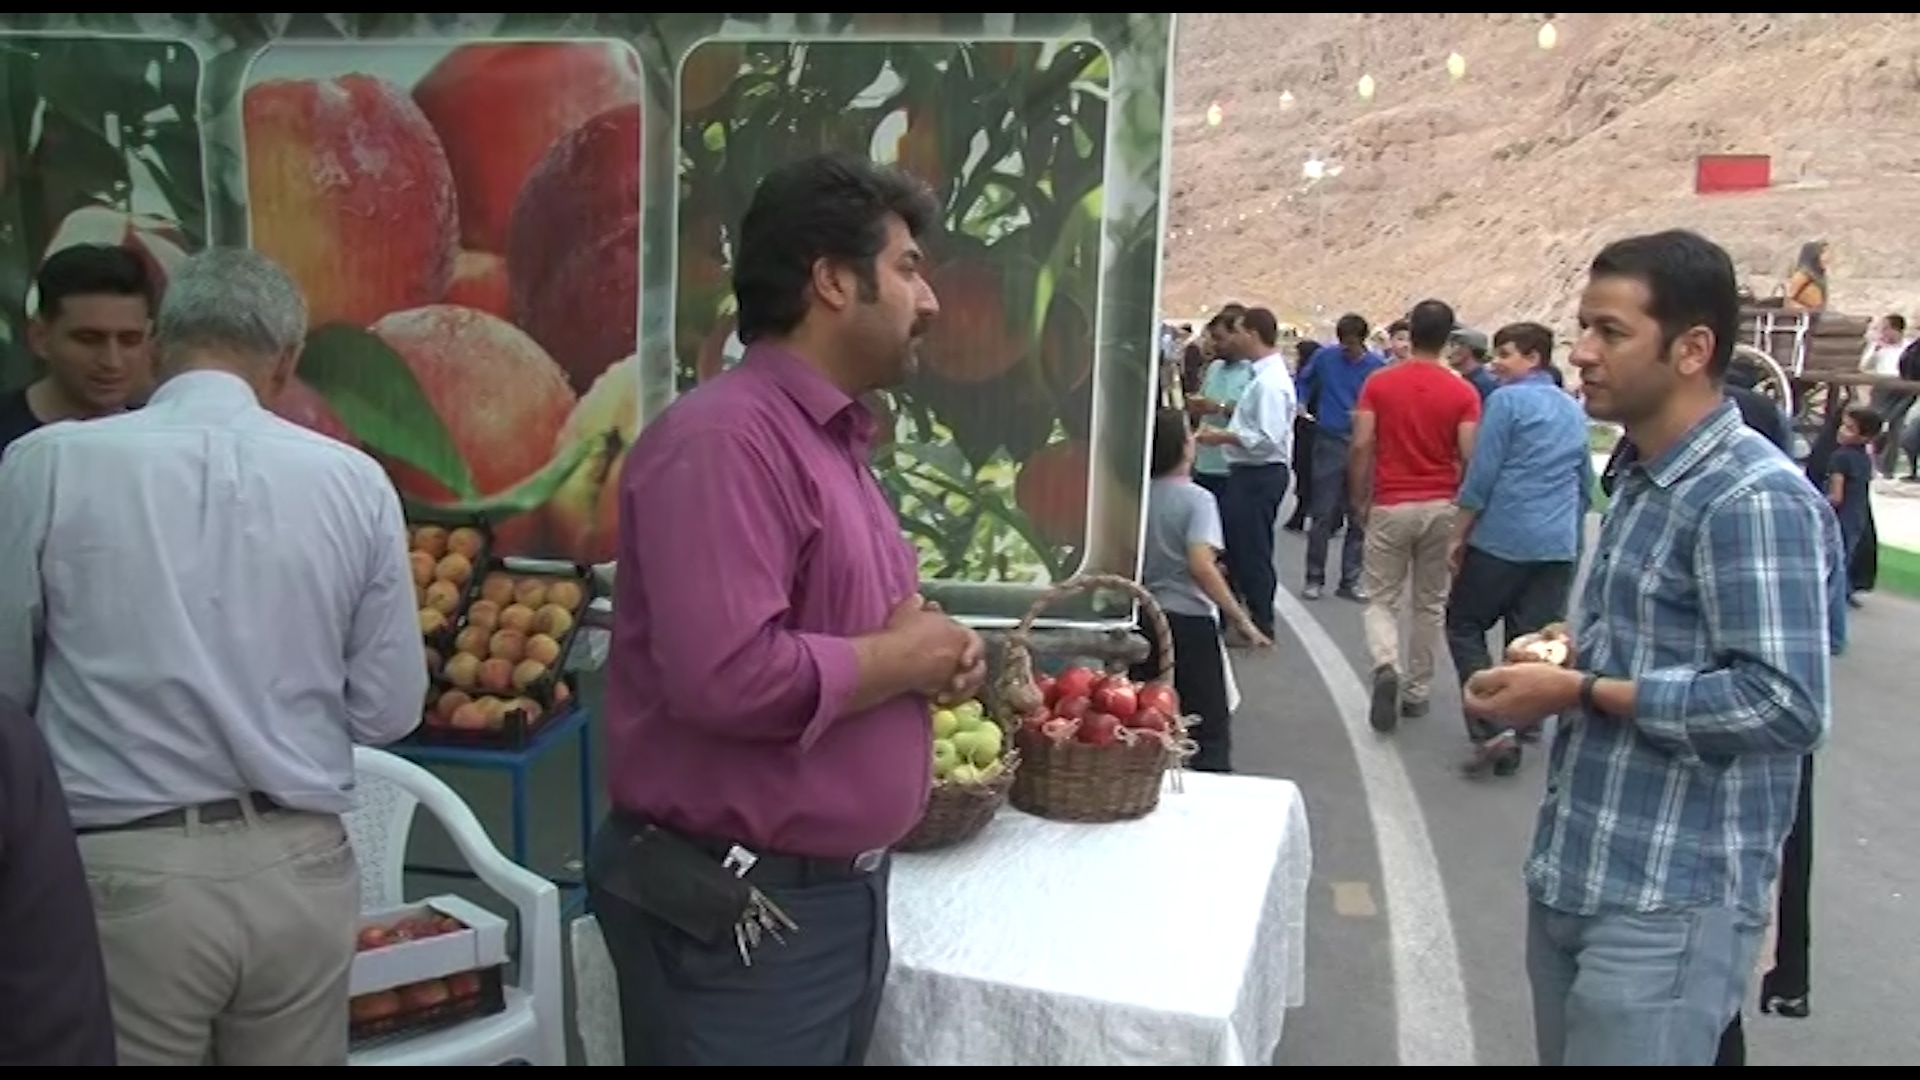 جشنواره هلوی قلعه شاهی در گلدشت + تصاویر و فیلم